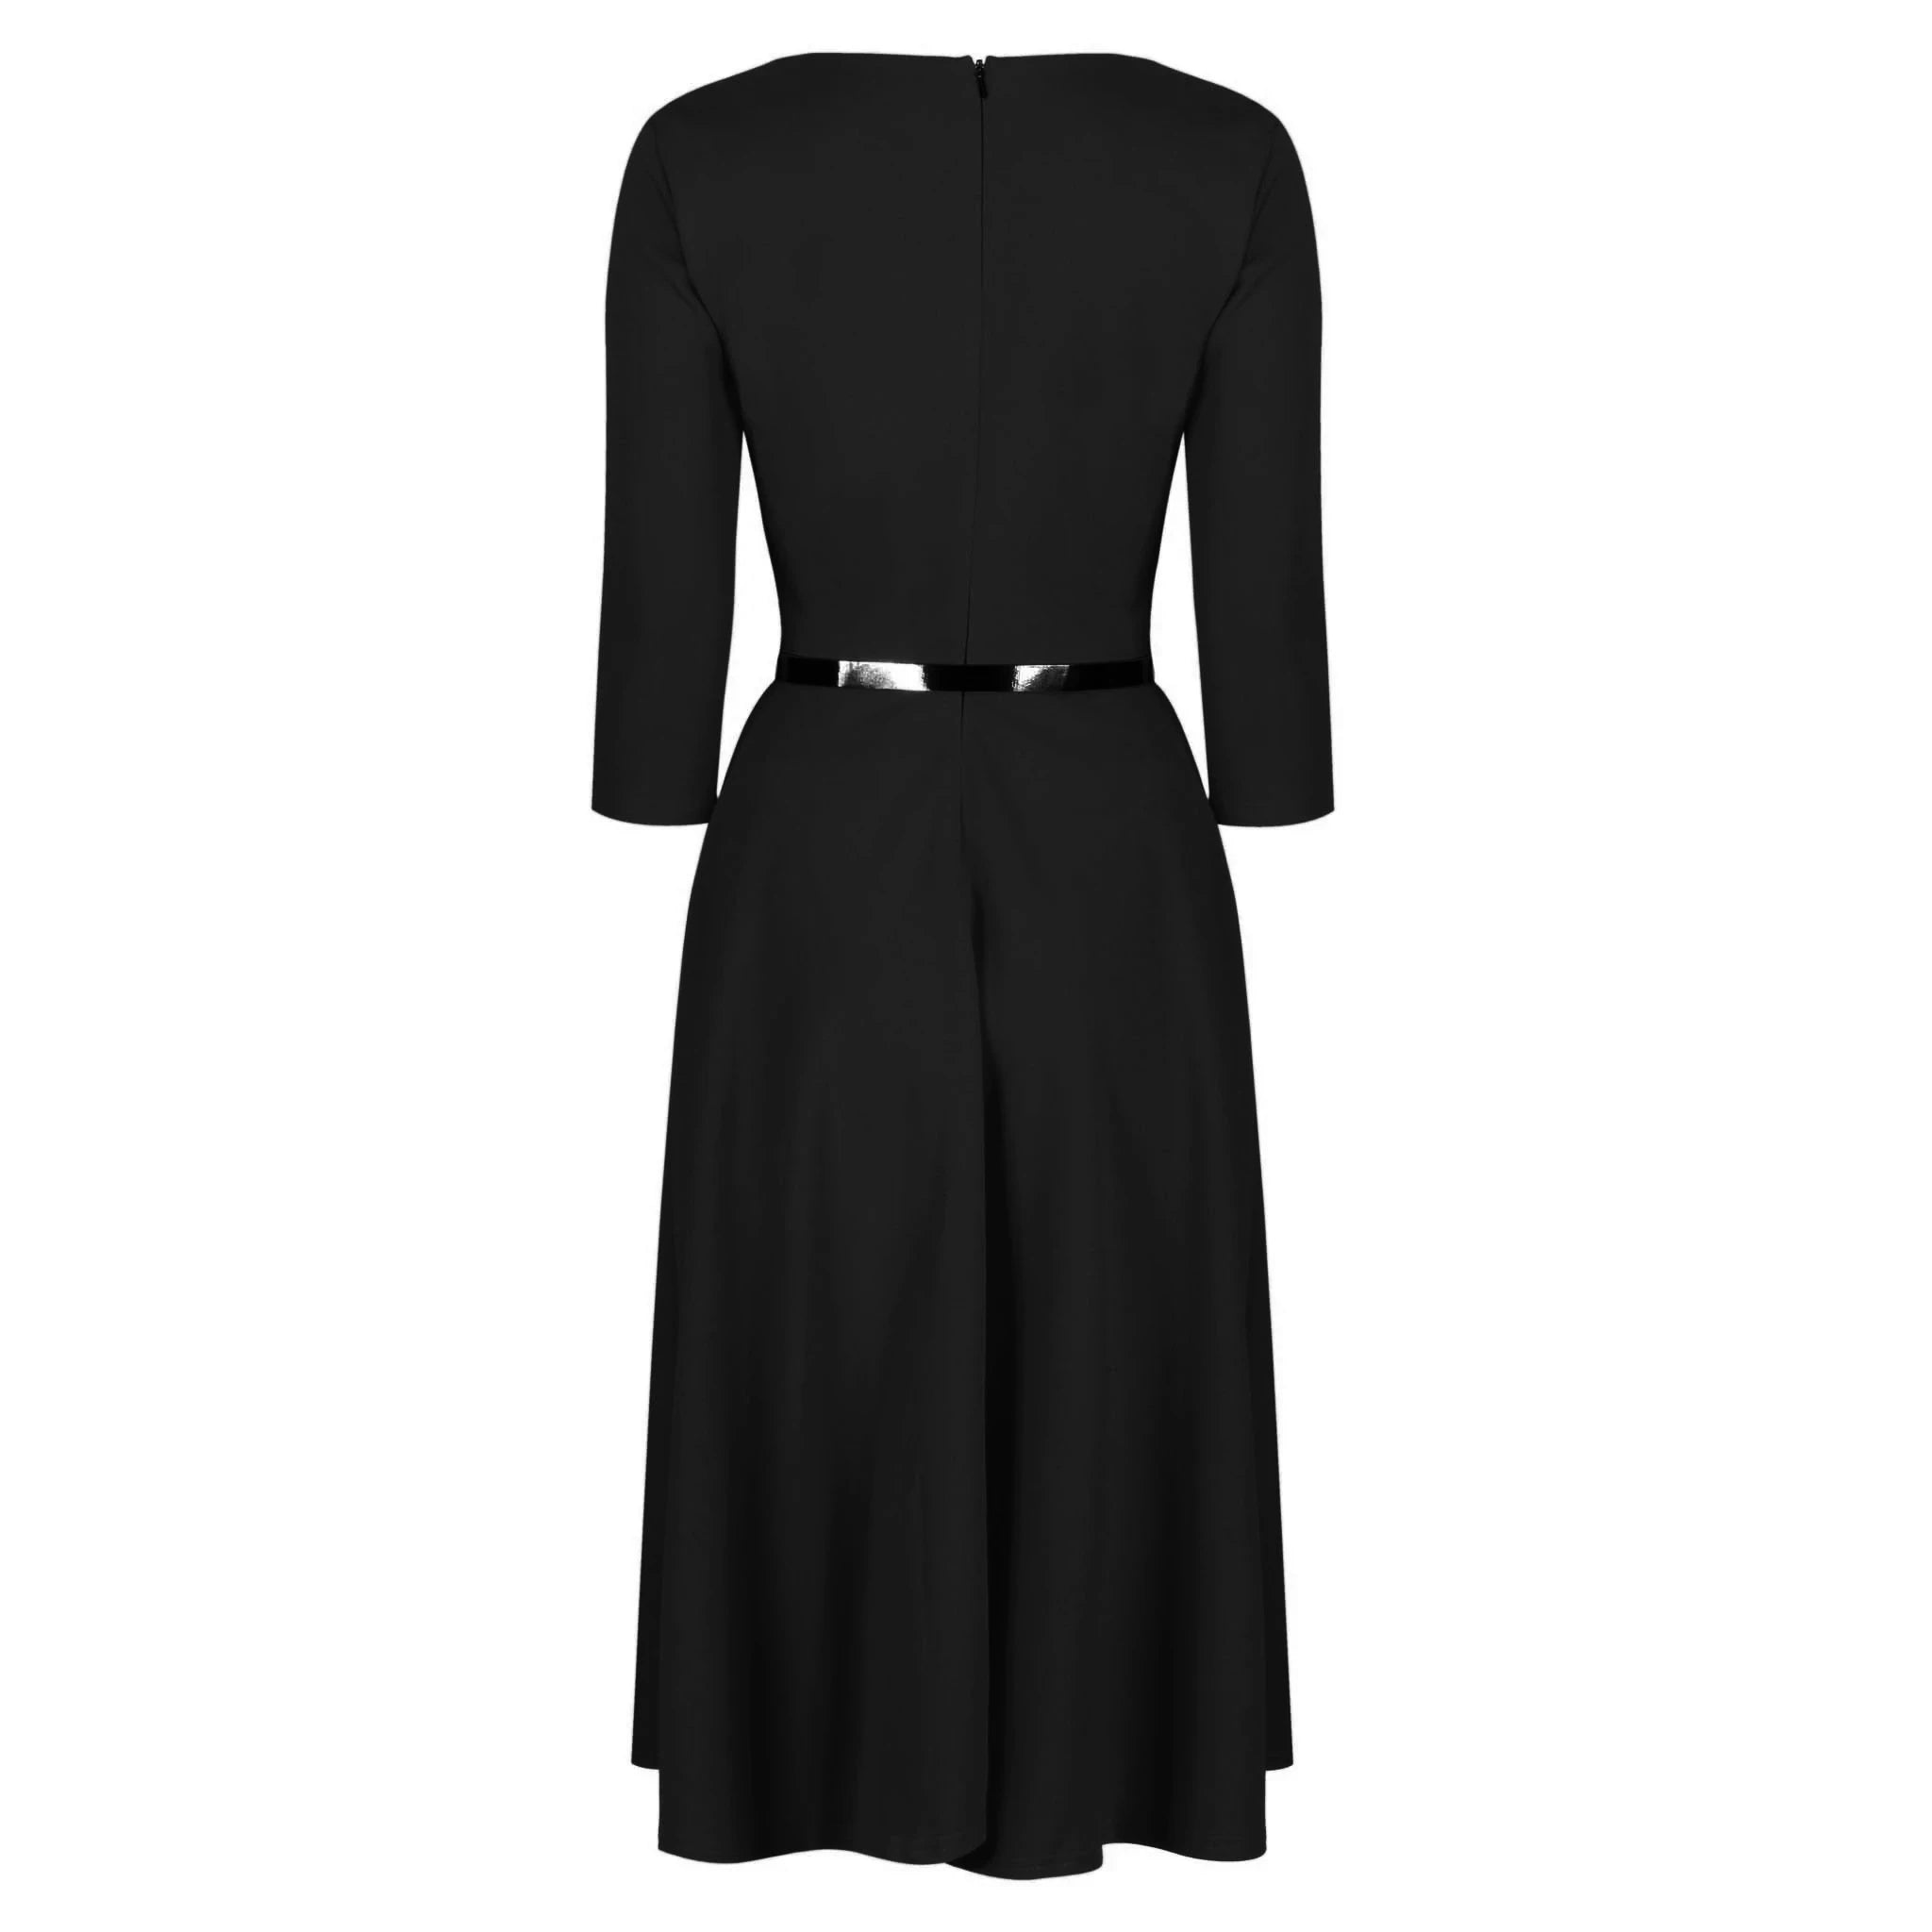 Black 3/4 Sleeve Sweetheart Neckline 50s Swing Dress – Pretty